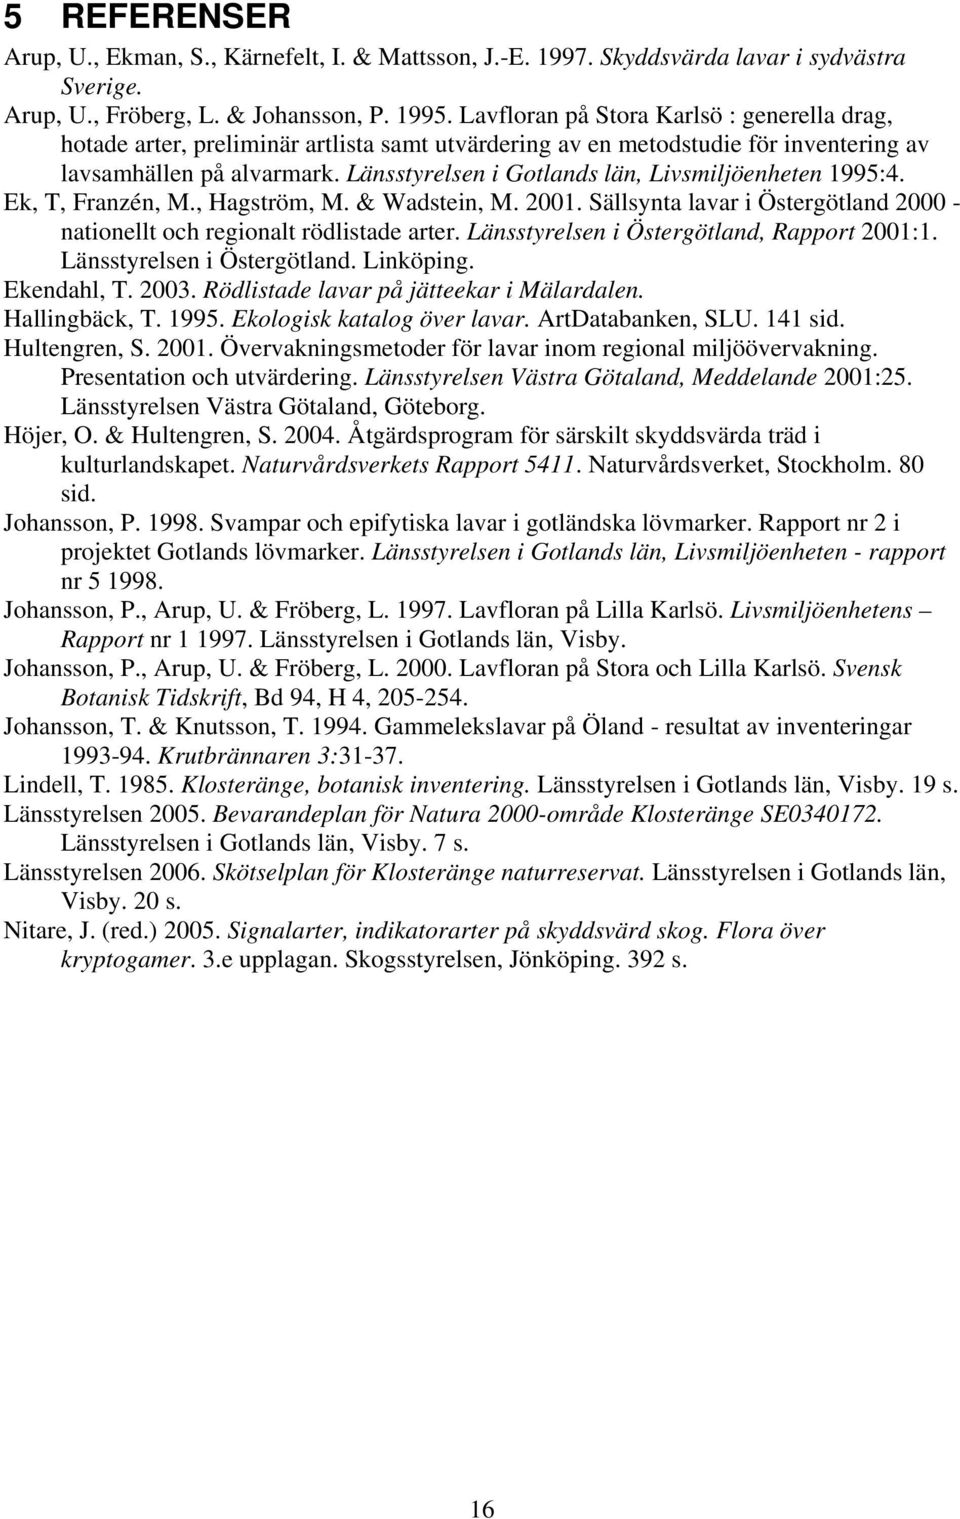 Länsstyrelsen i Gotlands län, Livsmiljöenheten 1995:4. Ek, T, Franzén, M., Hagström, M. & Wadstein, M. 2001. Sällsynta lavar i Östergötland 2000 - nationellt och regionalt rödlistade arter.